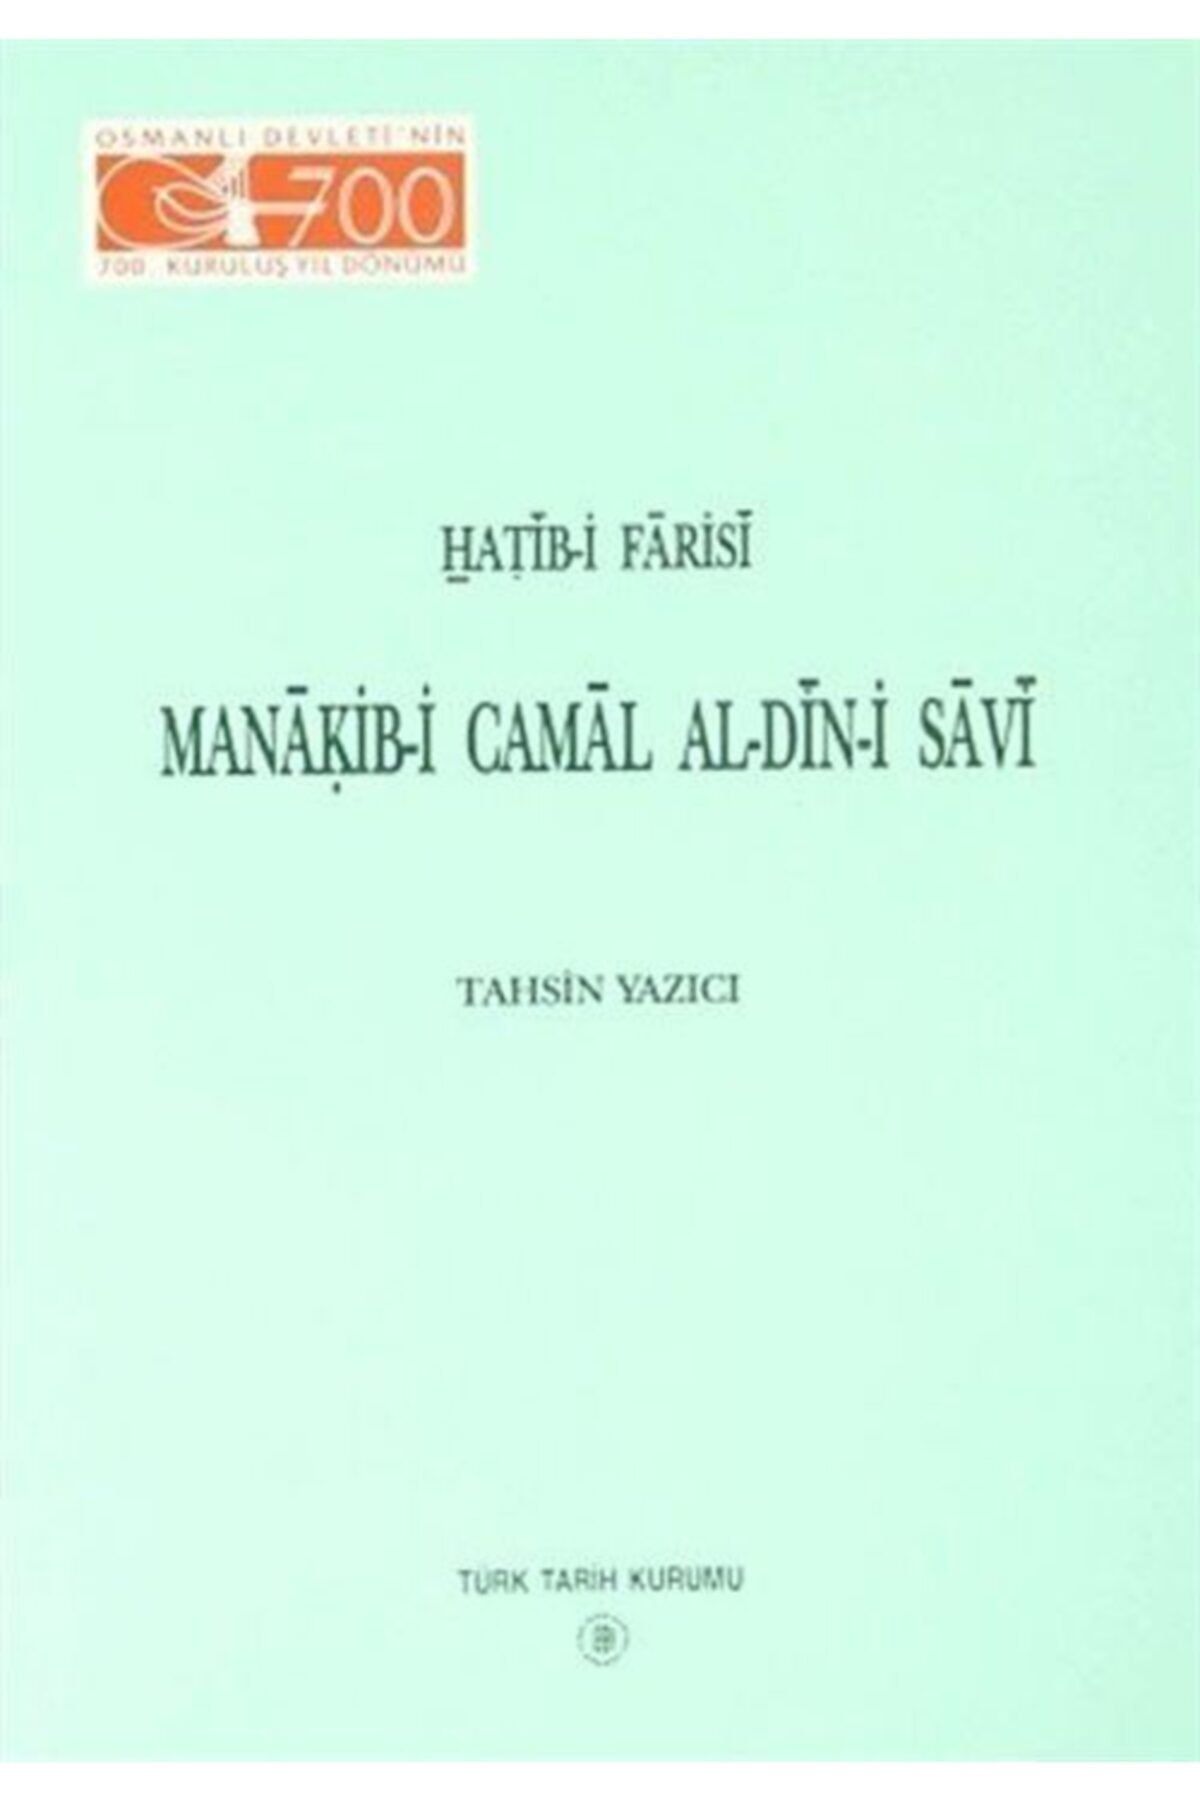 Türk Tarih Kurumu Yayınları Manakib-i Camal Al-din-i Savi